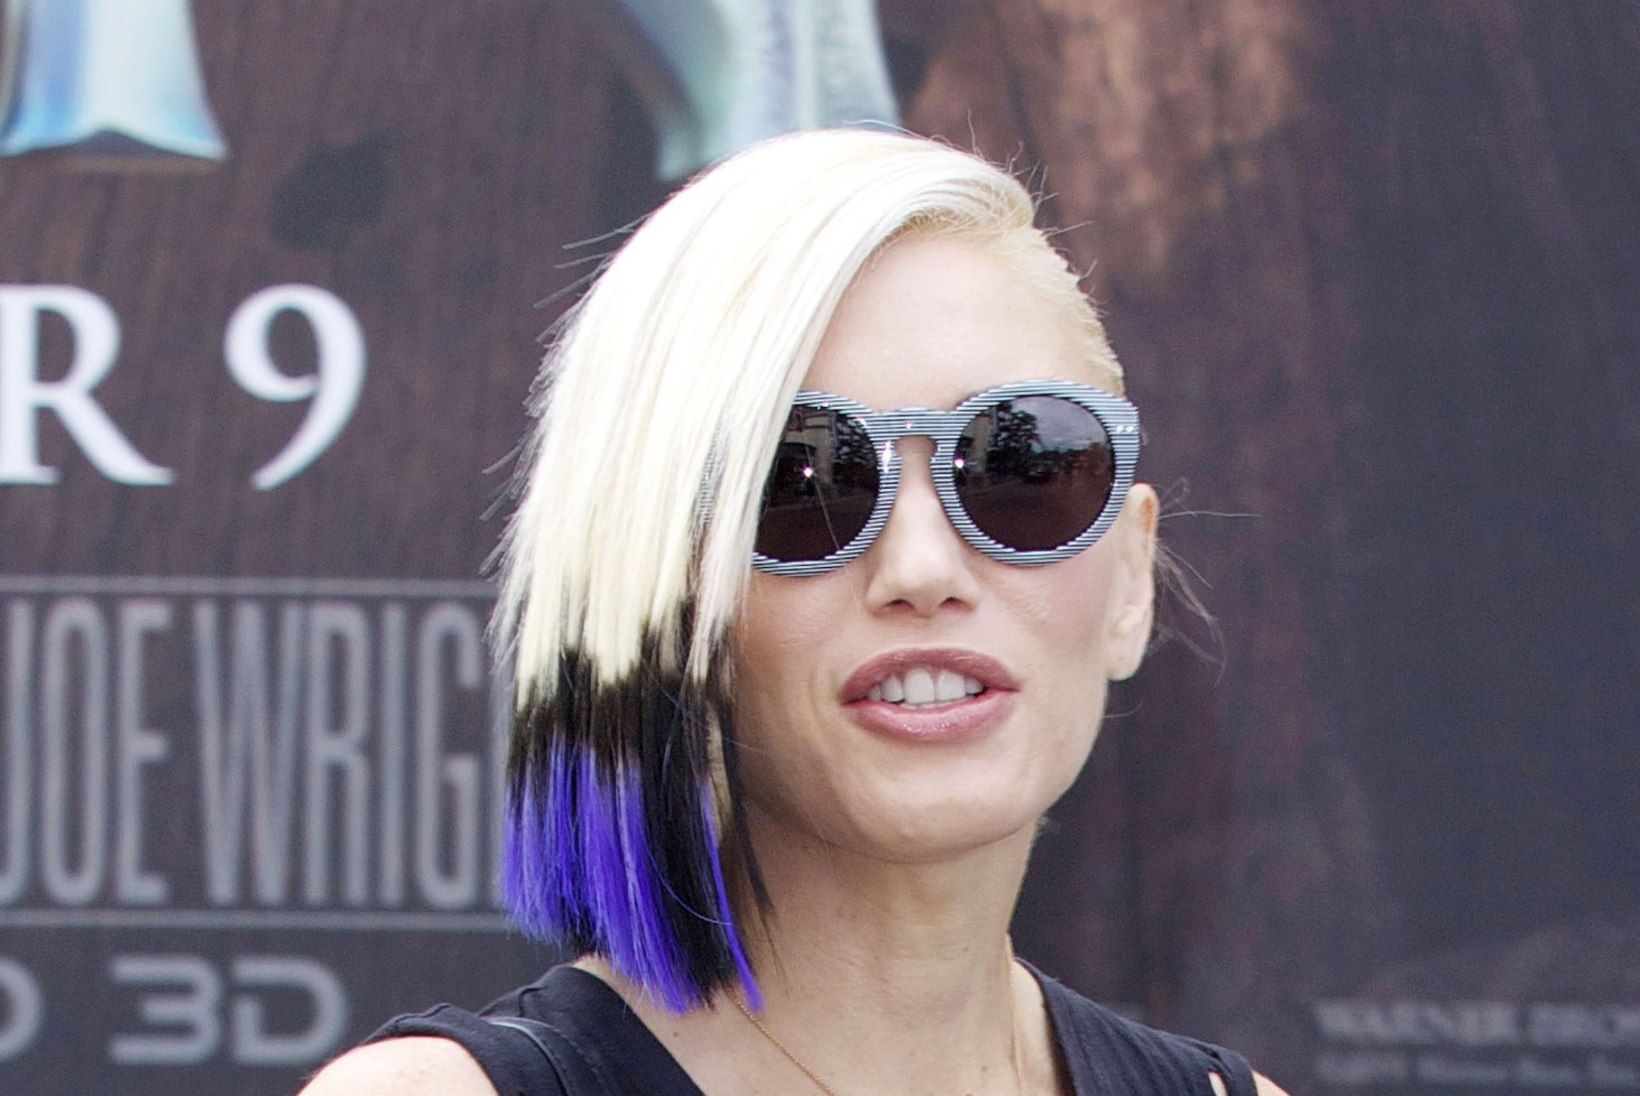 Gwen Stefani uus soeng on Eesti lipu värvides